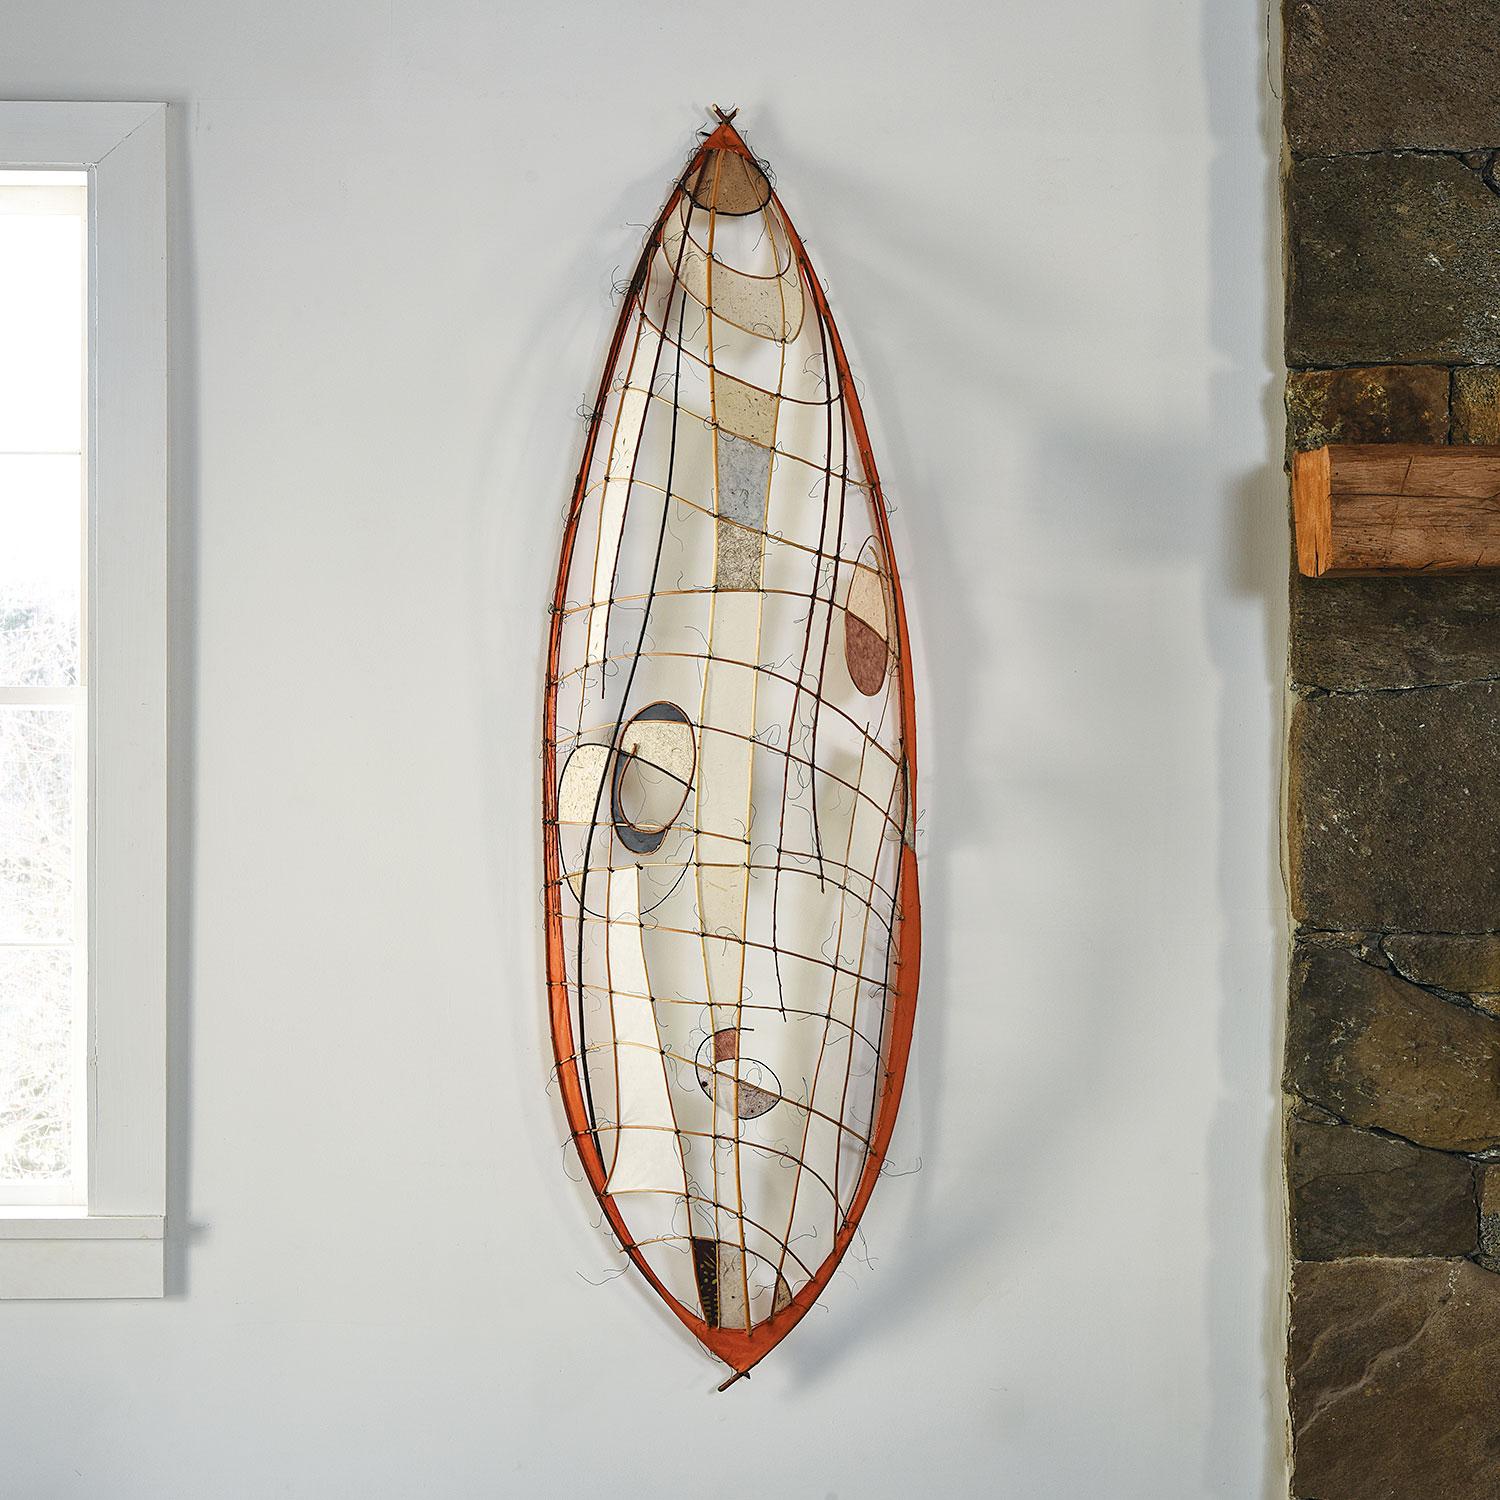 Cette sculpture murale abstraite en forme de bateau, réalisée par l'artiste danoise Jane Balsgaard, est composée de fer, de bambou, de saule, de fil de pêche et de papier végétal fait à la main. 

Balsgaard est souvent connue pour son utilisation